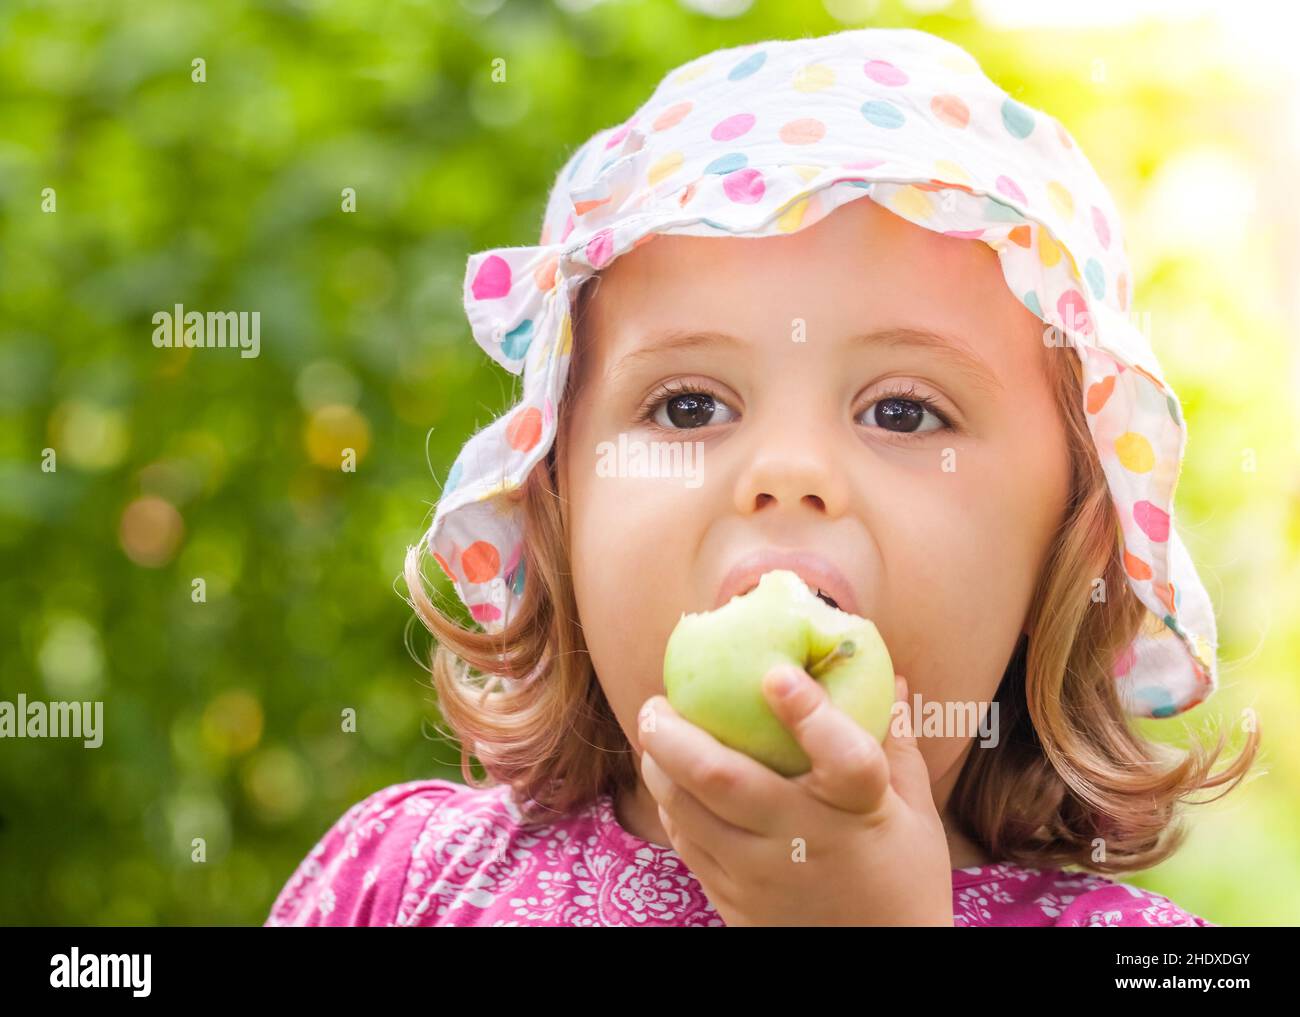 girl, eating, apple, girls, eat, apples Stock Photo